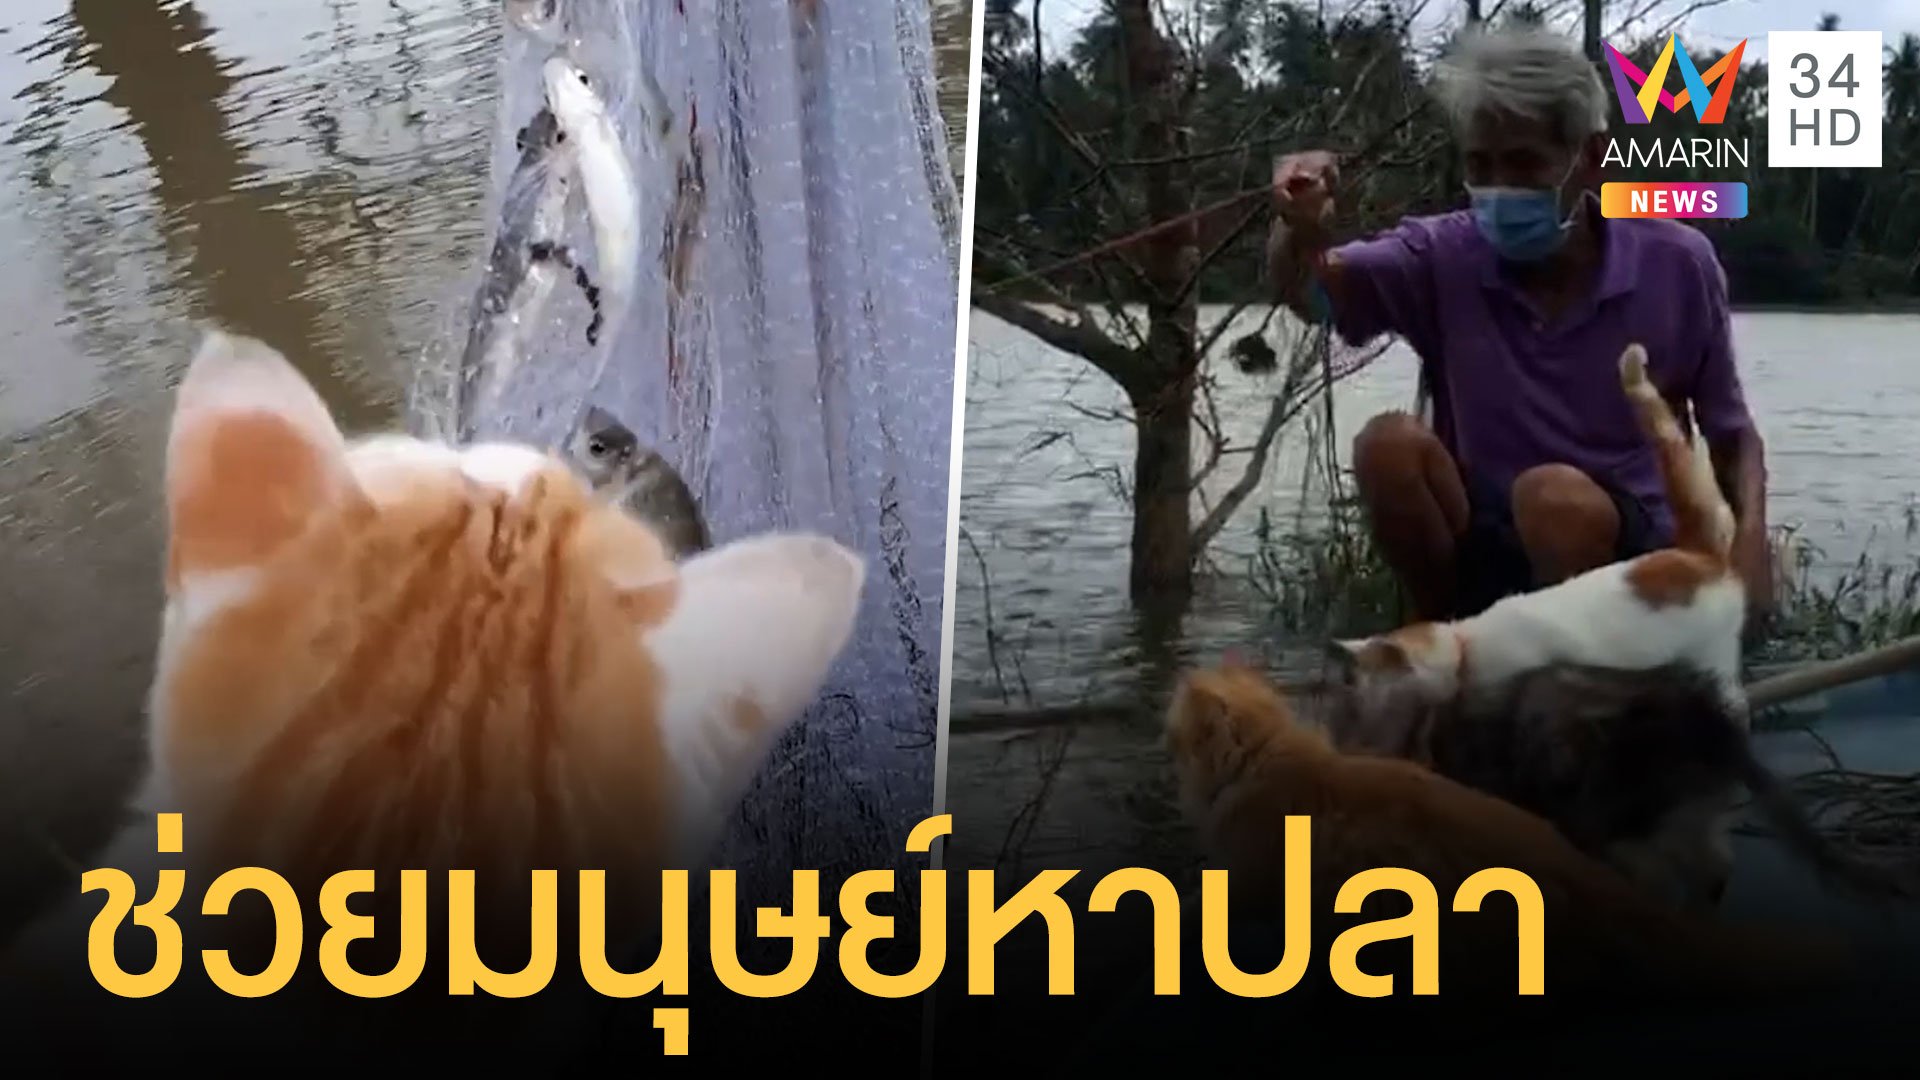 แมวประมงออกหาปลาพร้อมเจ้าของ สัมผัสปลาจากคลอง | ข่าวอรุณอมรินทร์ | 11 ม.ค. 64 | AMARIN TVHD34